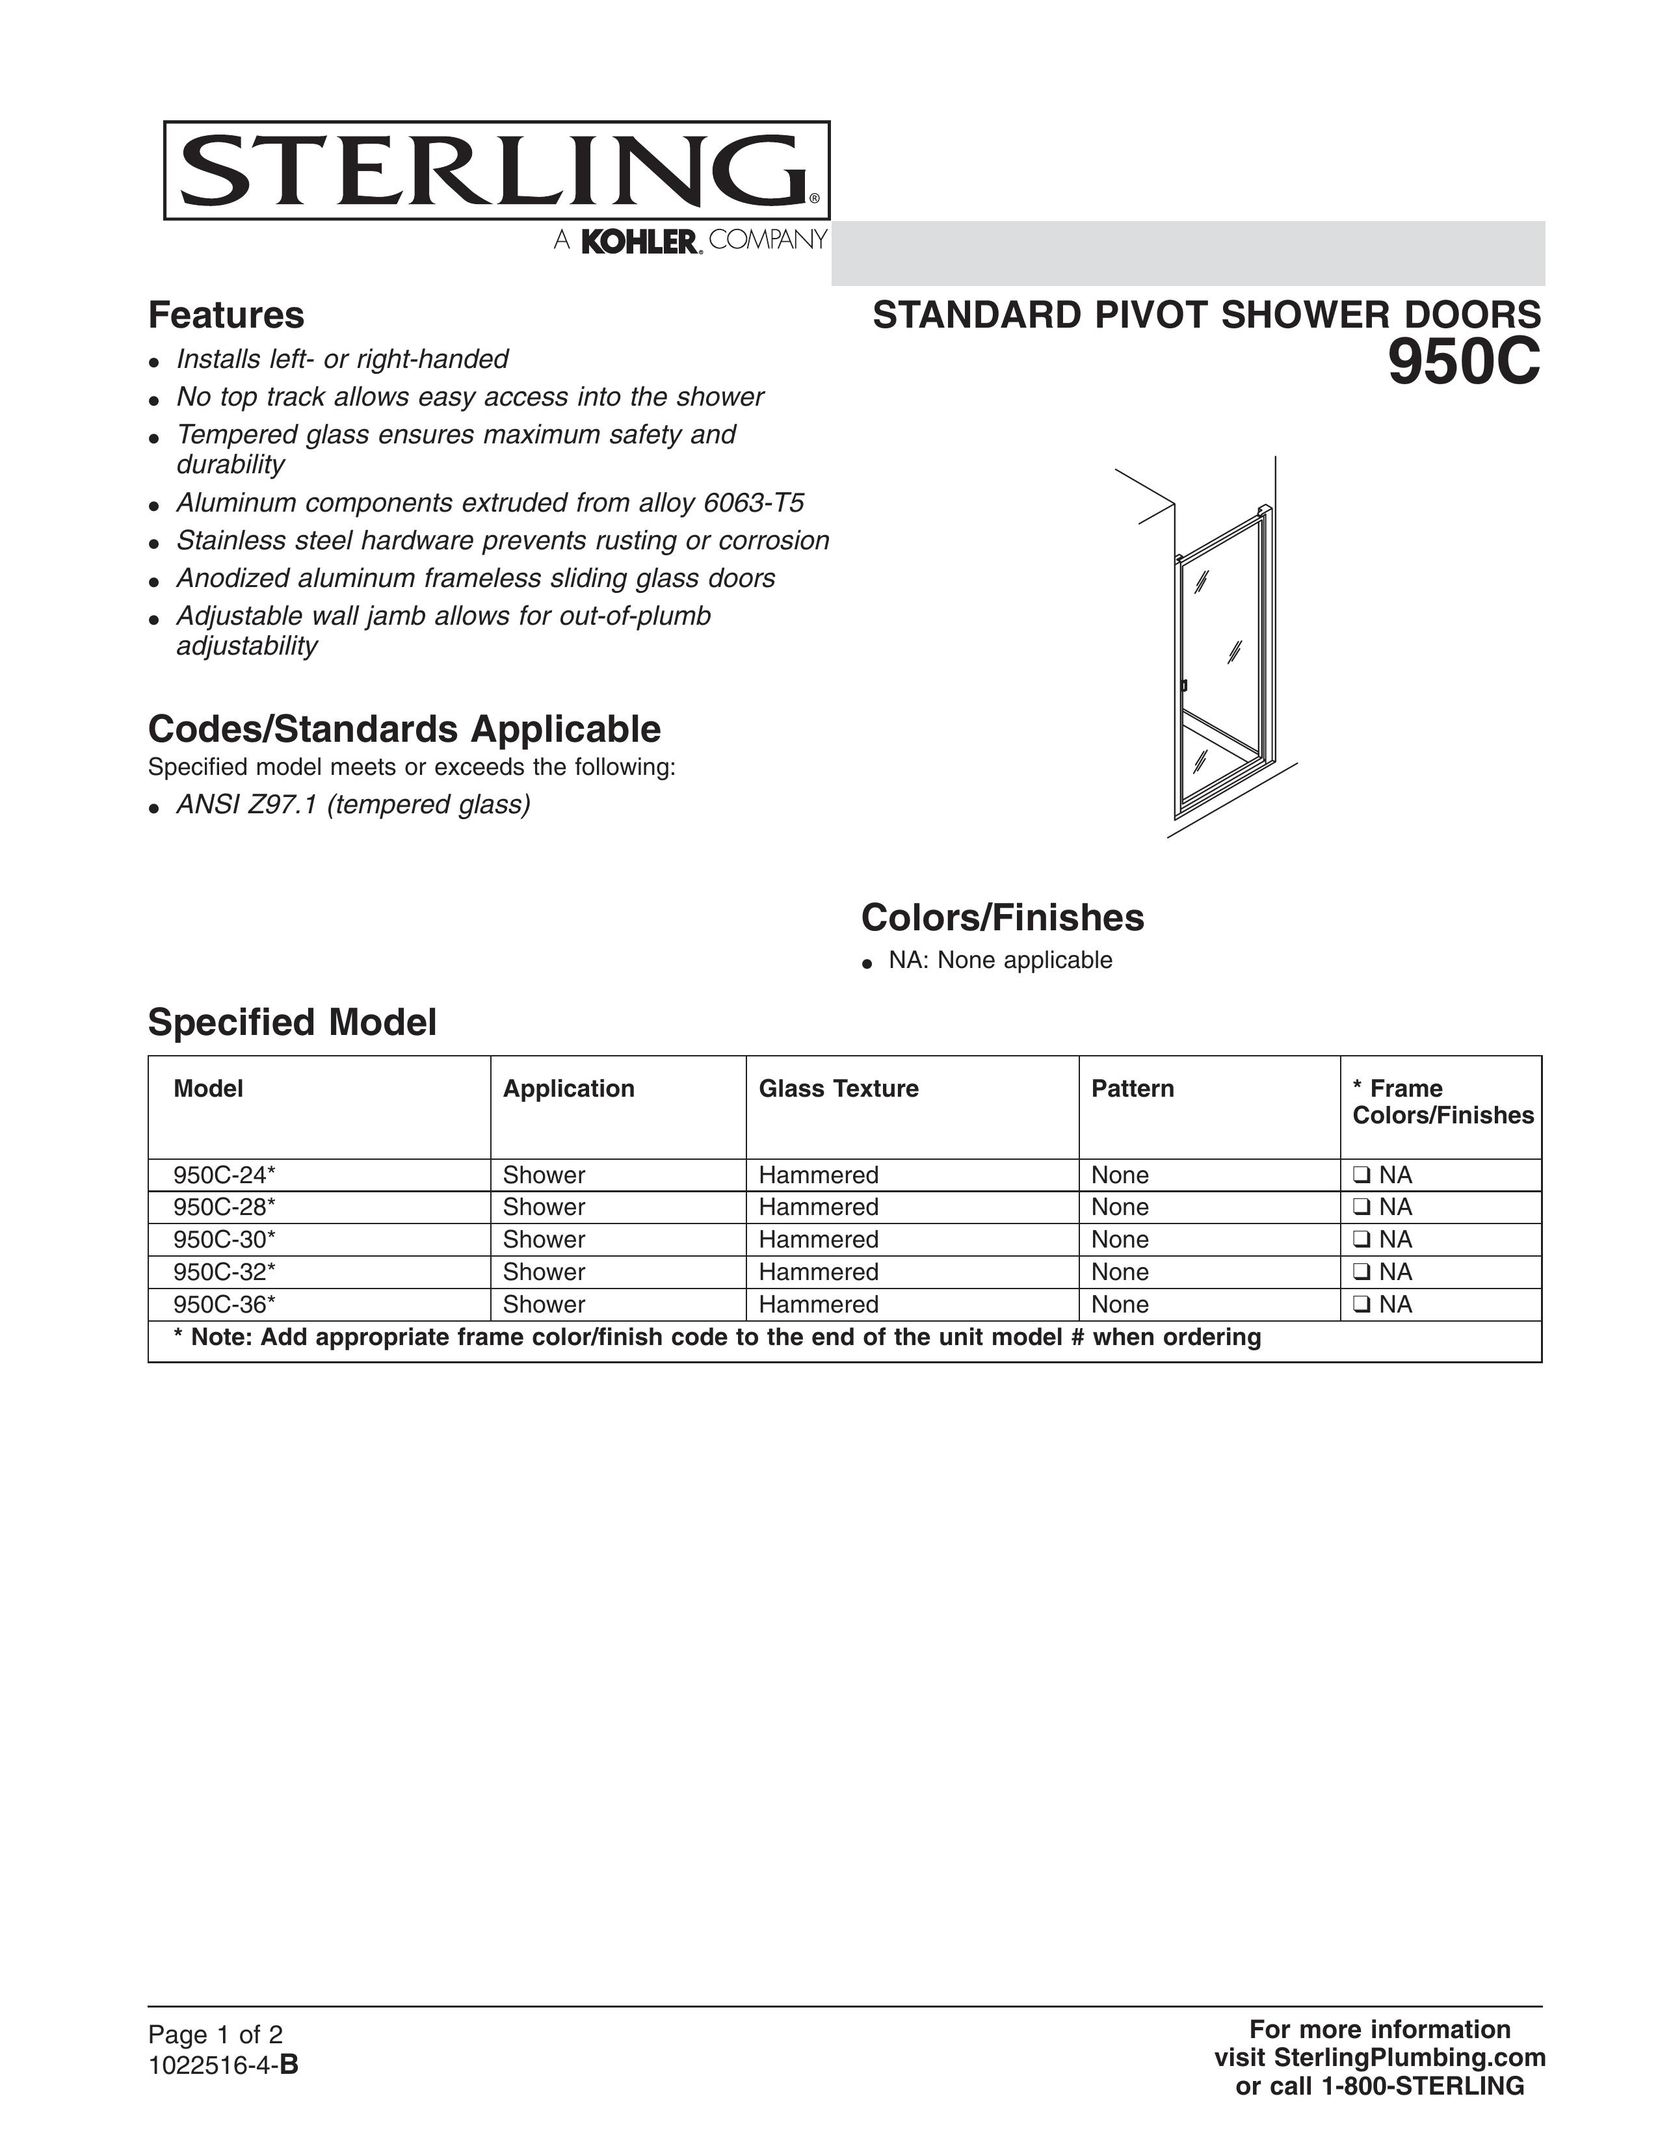 Sterling Plumbing 950C-32* Door User Manual